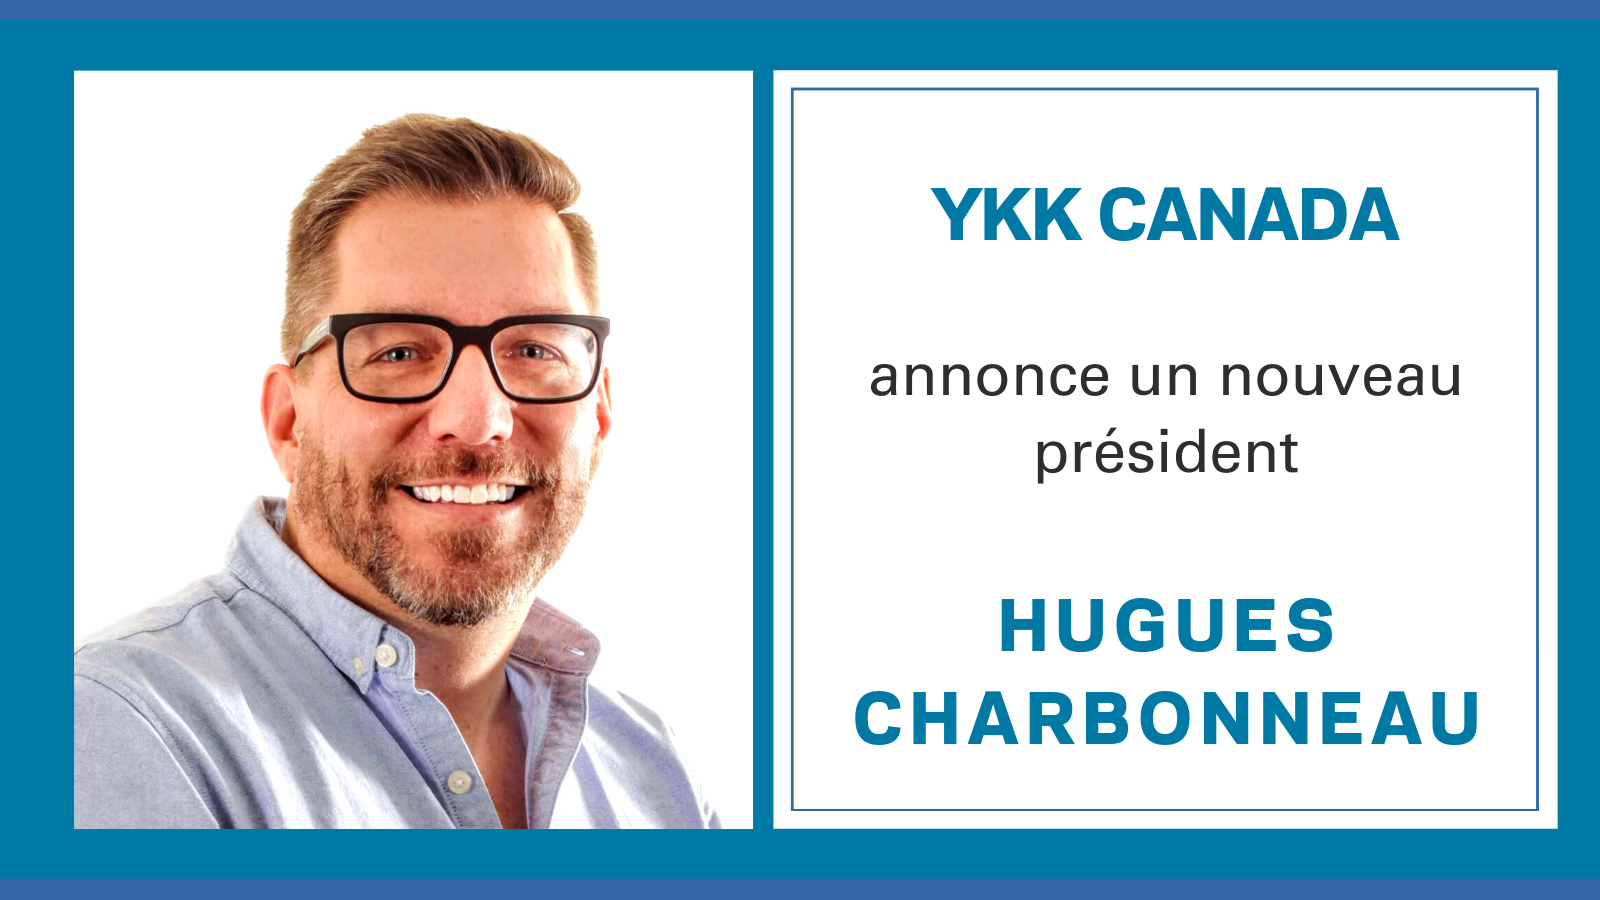 Hugues Charbonneau succède à Jim Maguire au poste de président de YKK Canada